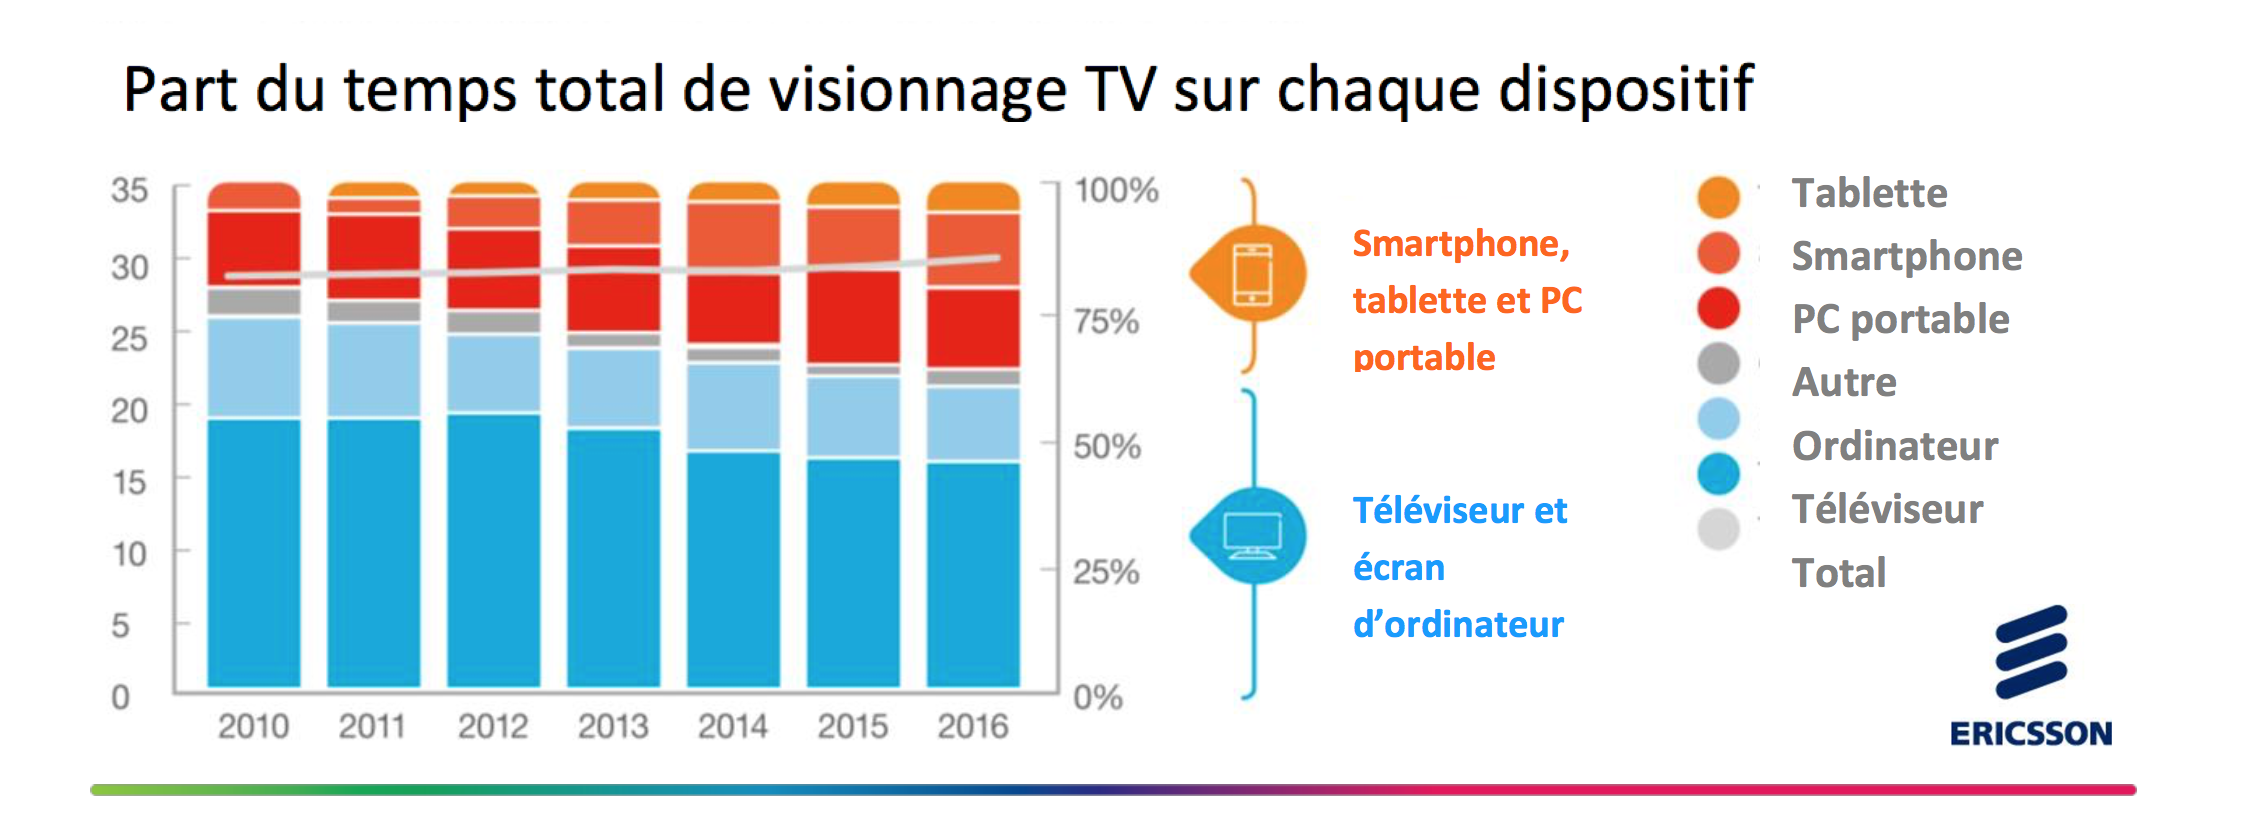 La consommation vidéo progresse sur mobile au détriment des écrans fixes